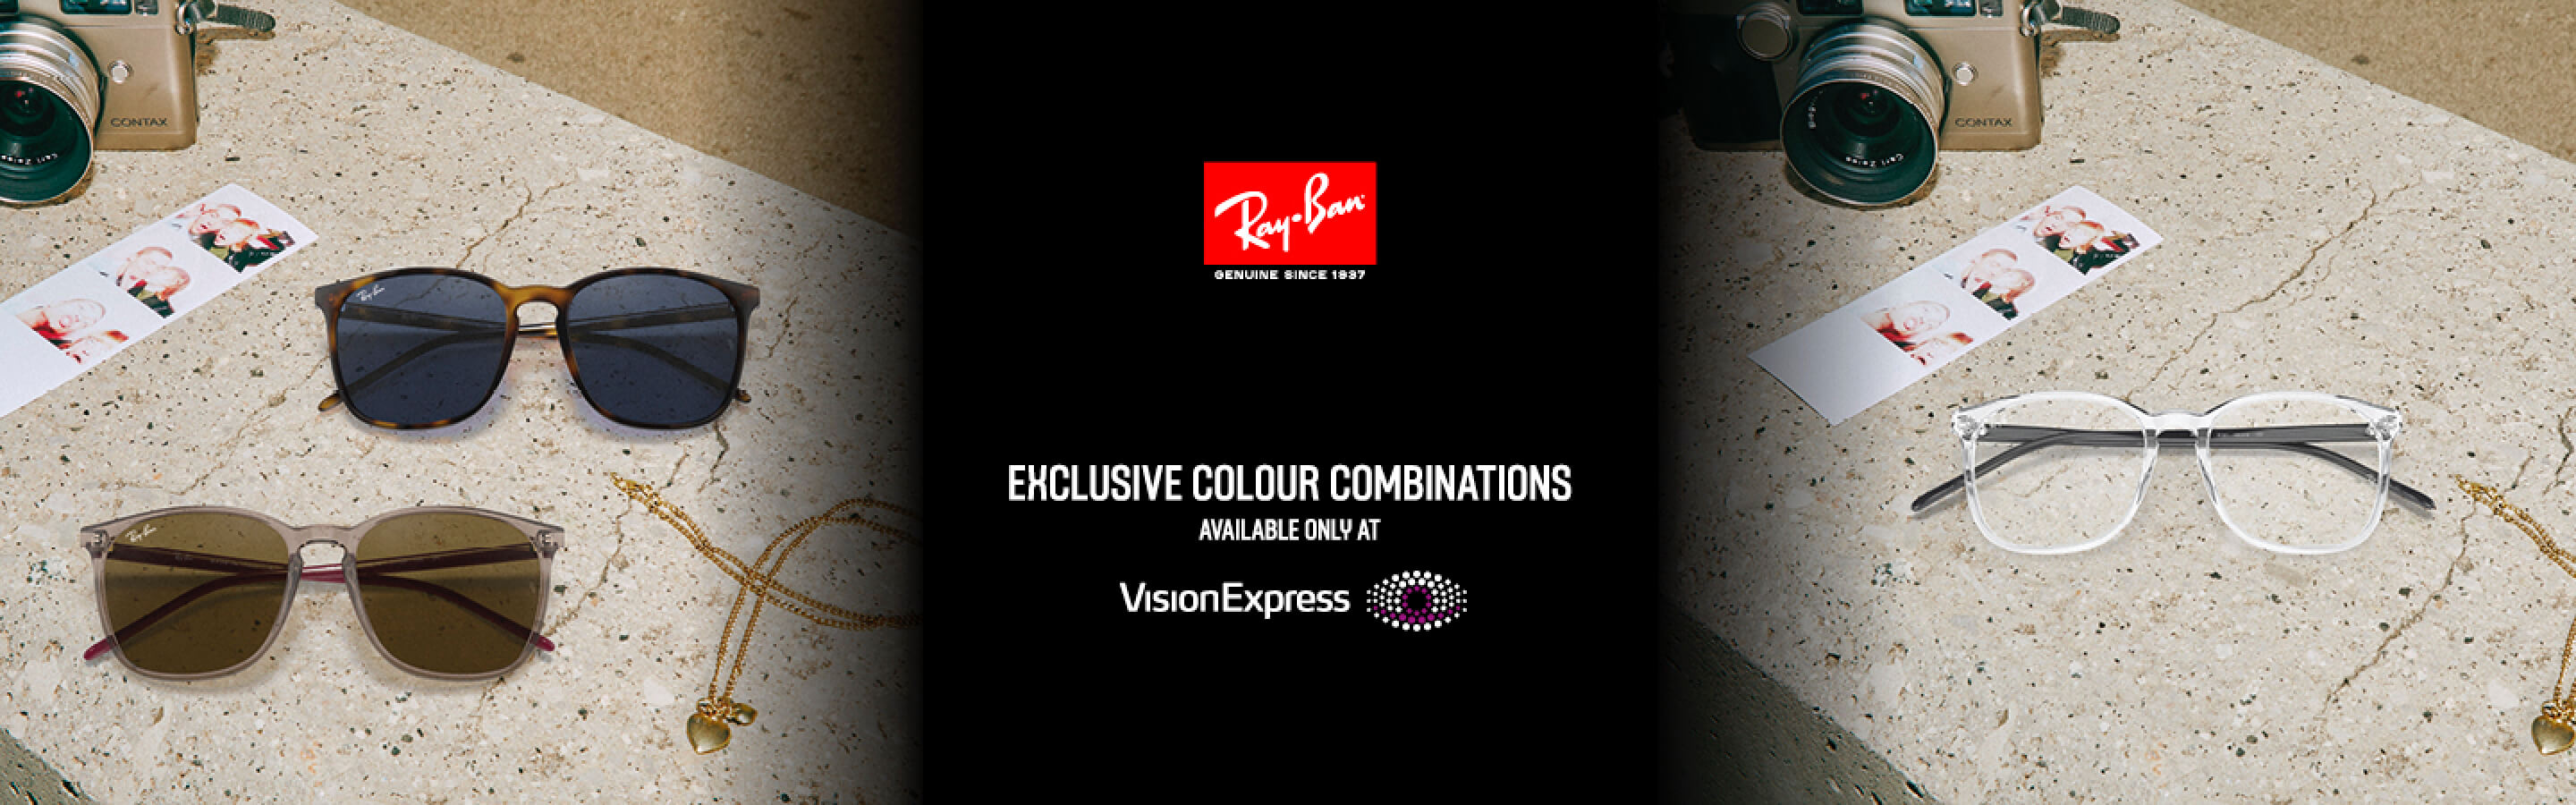 Ray-Ban Glasses & Sunglasses | Vision Express